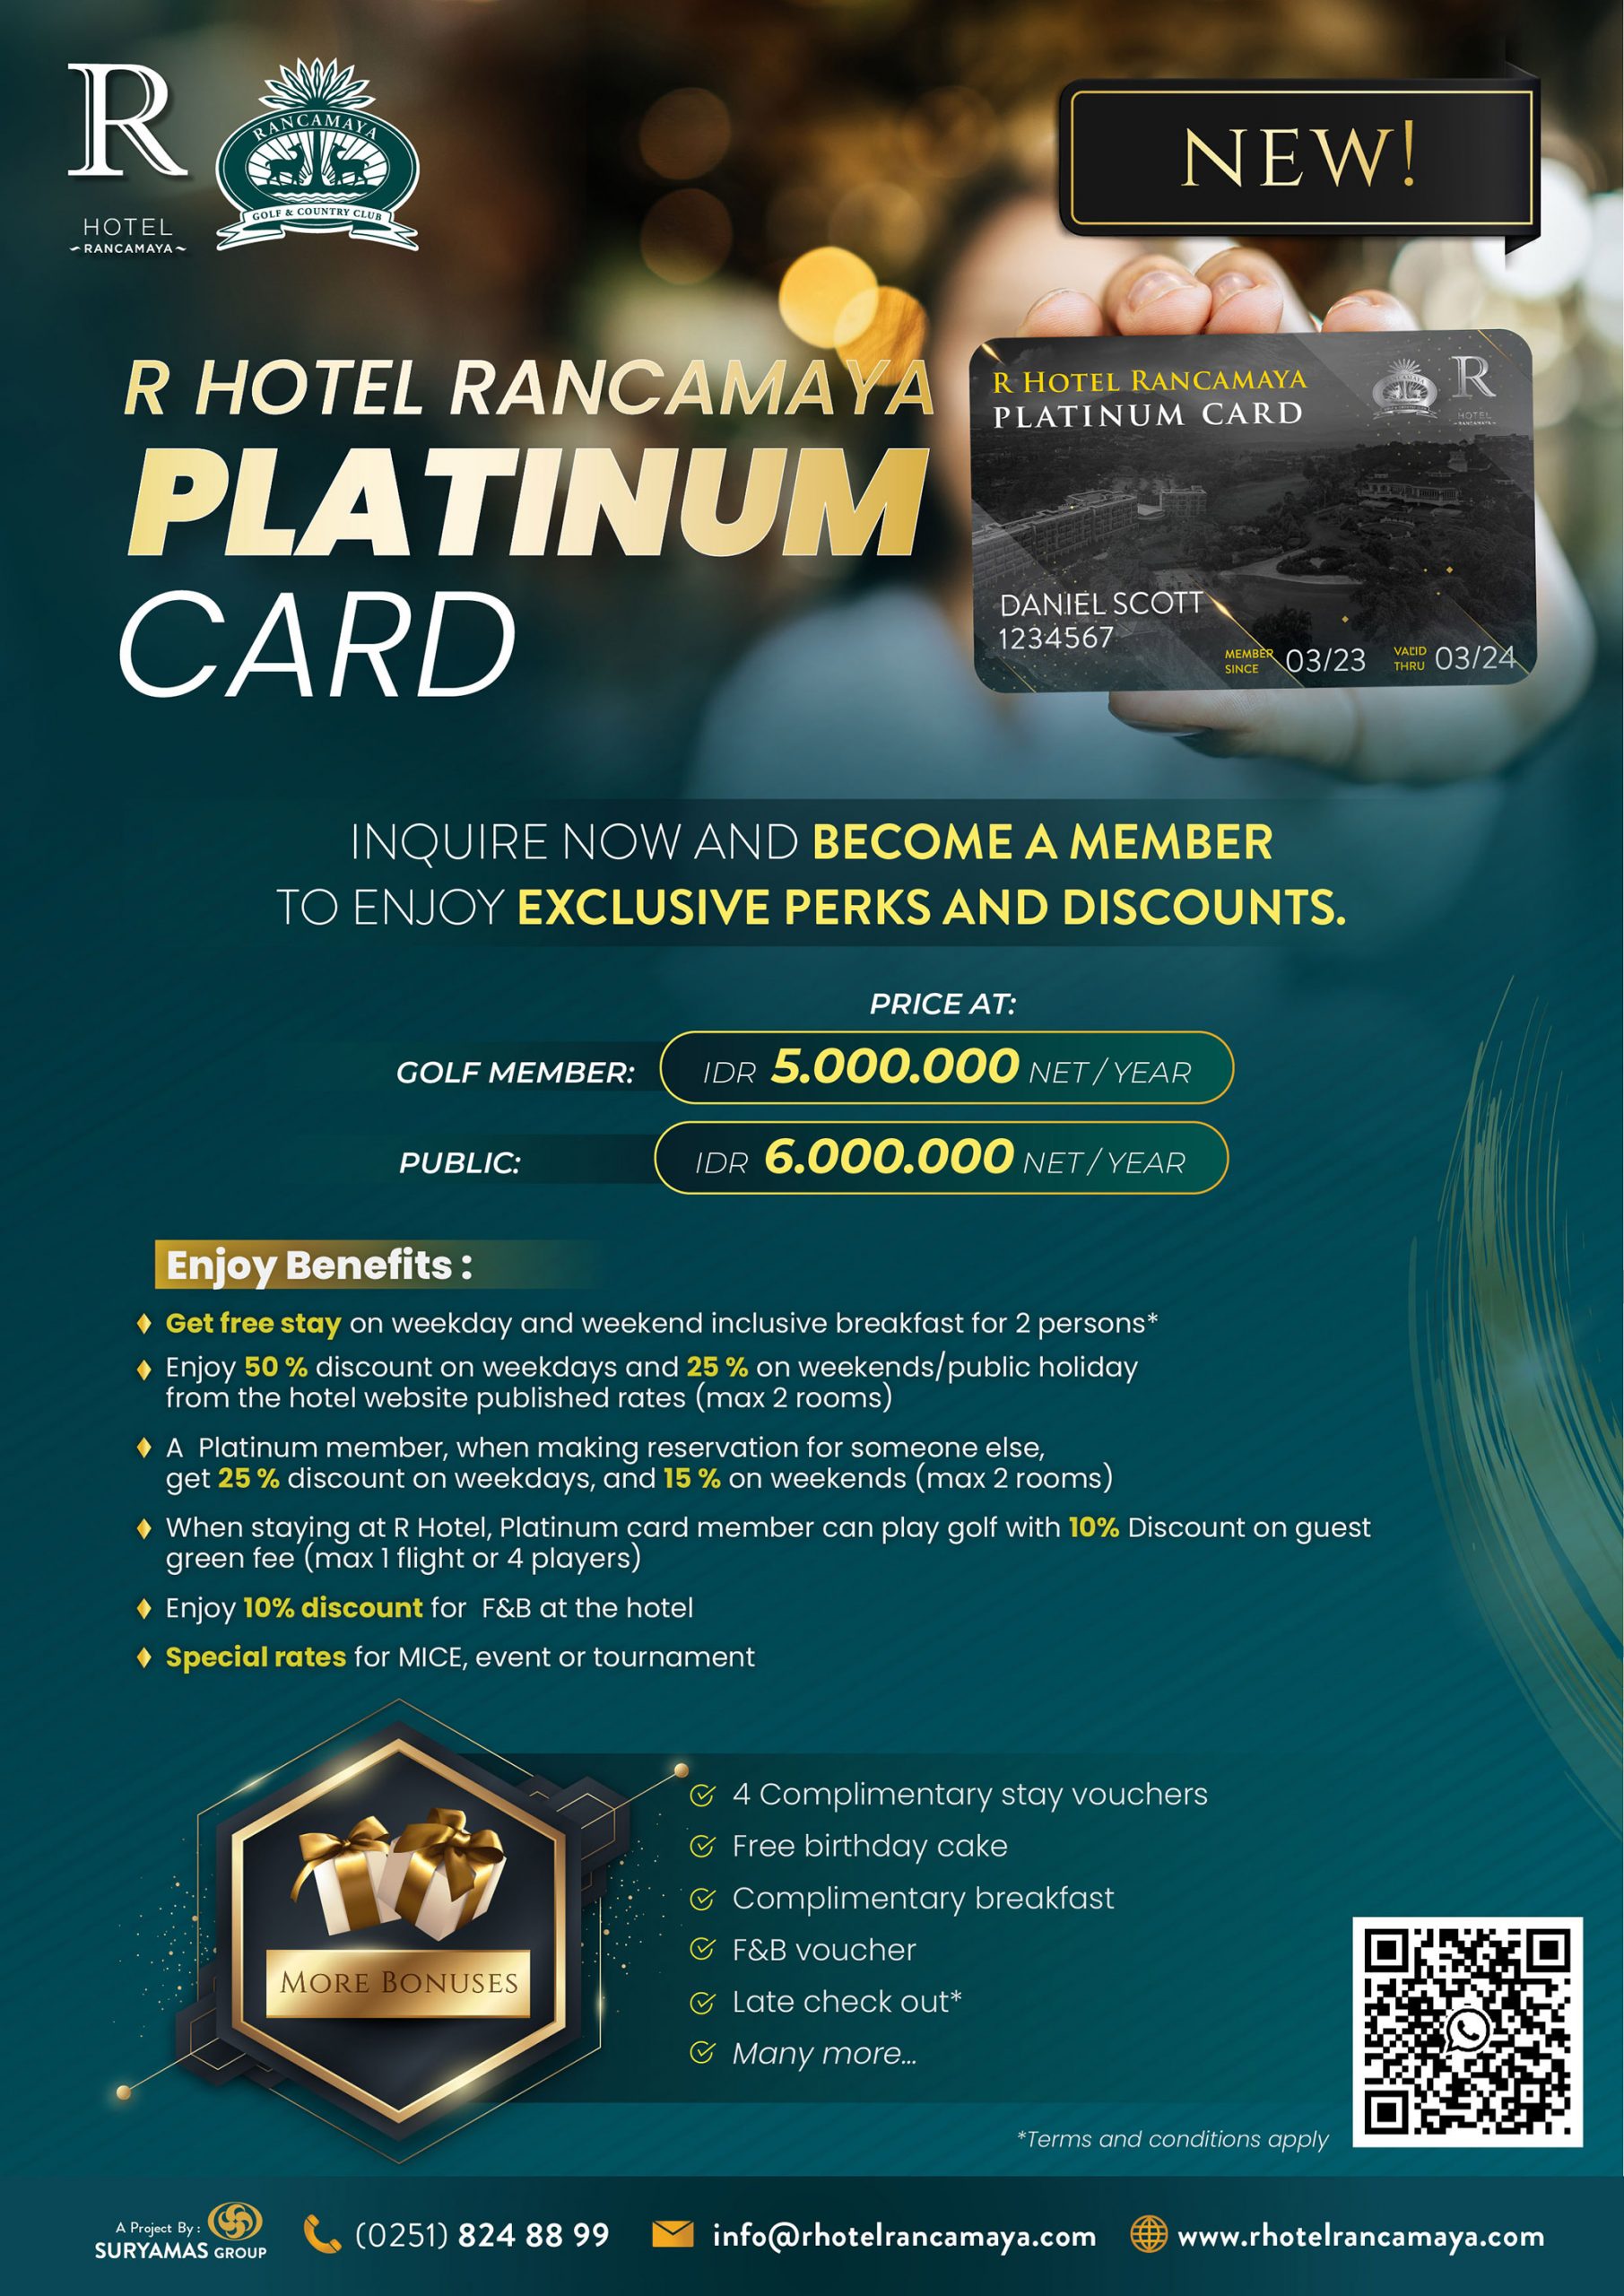 R Hotel Rancamaya Platinum Card